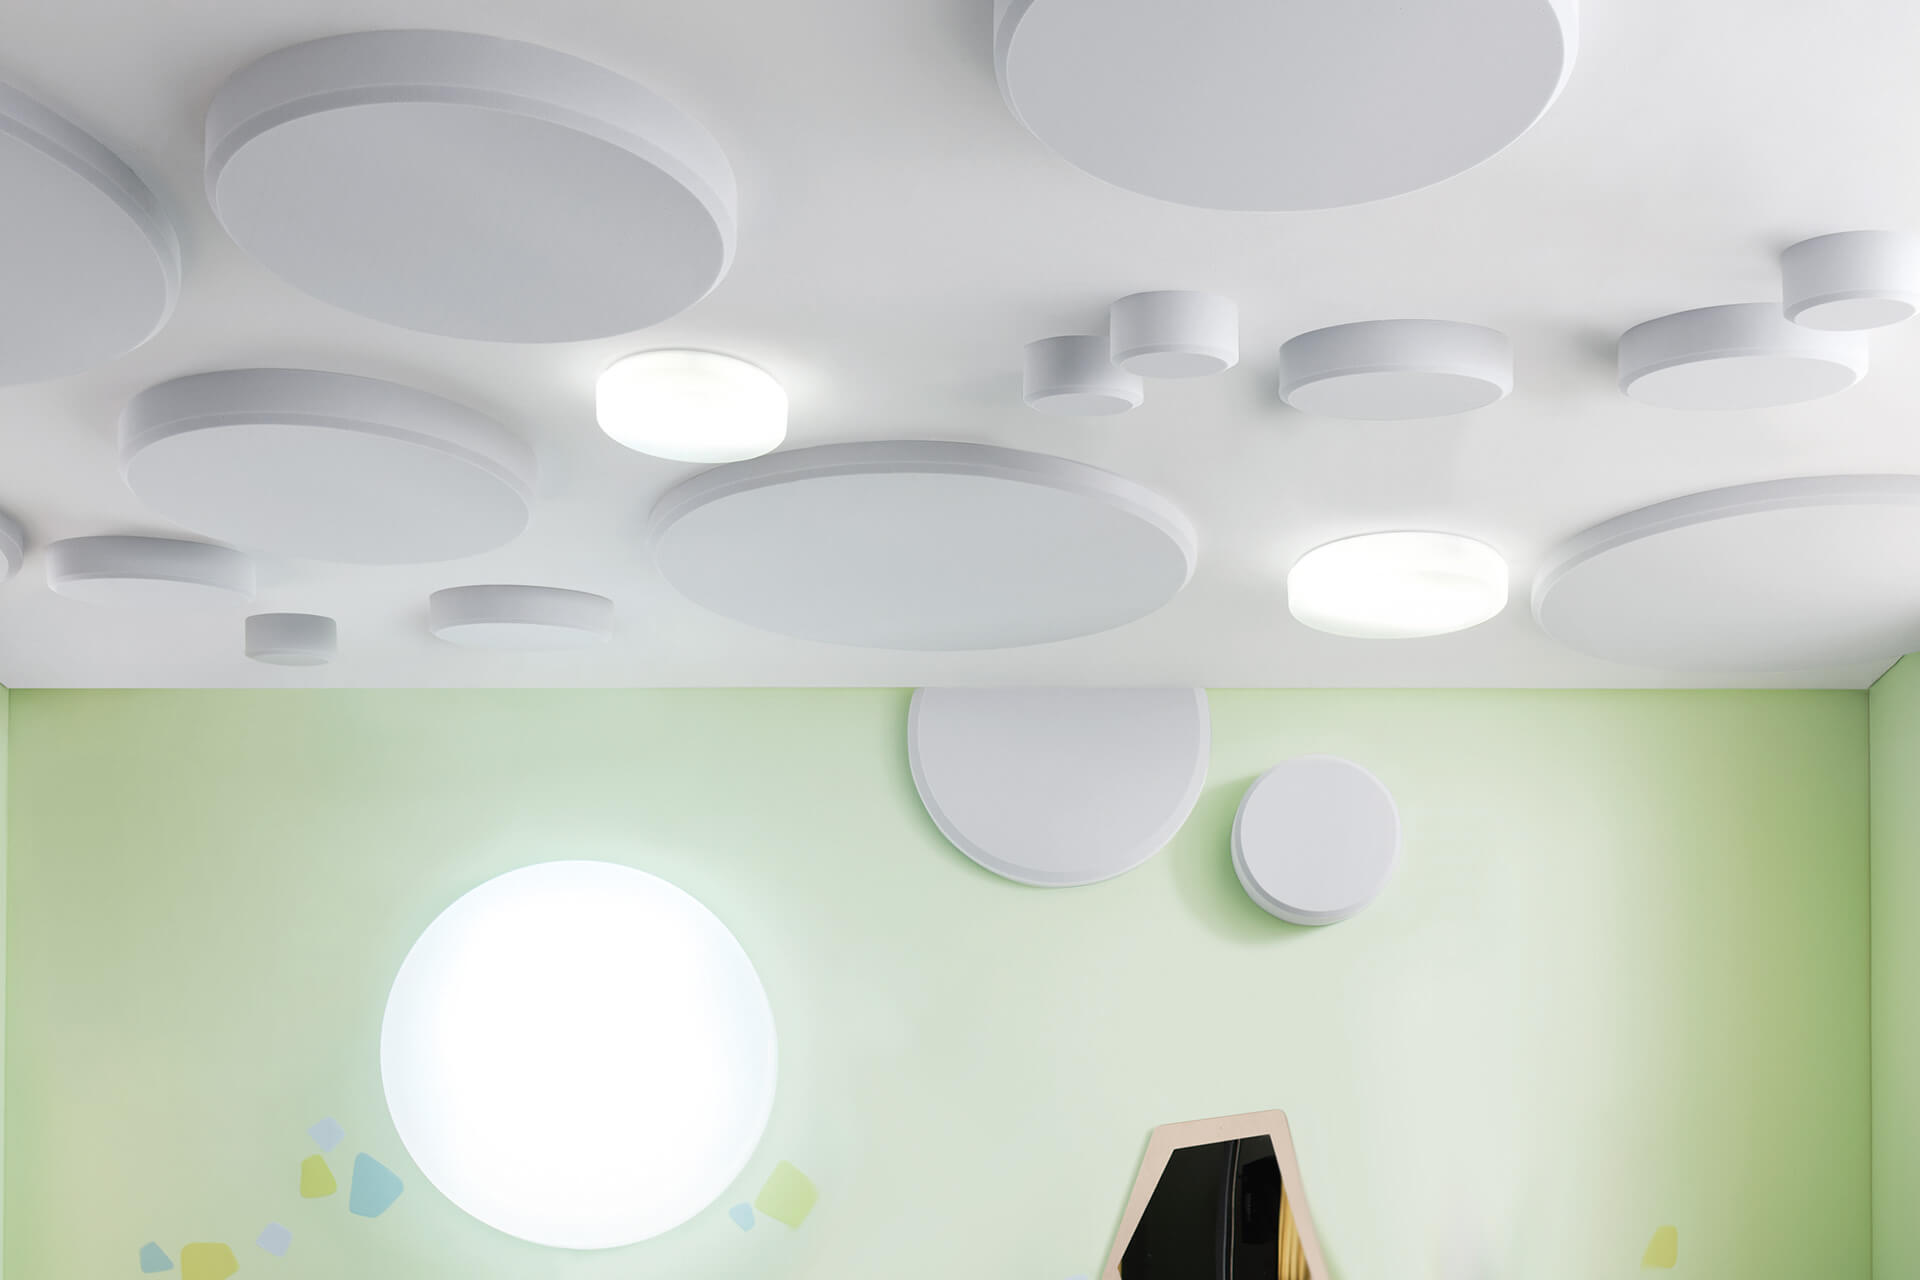 Schlafraum | 2 | Schallschutz | Weiße Raumdecke mit runden Schallschutz-Platten und runden Lampen